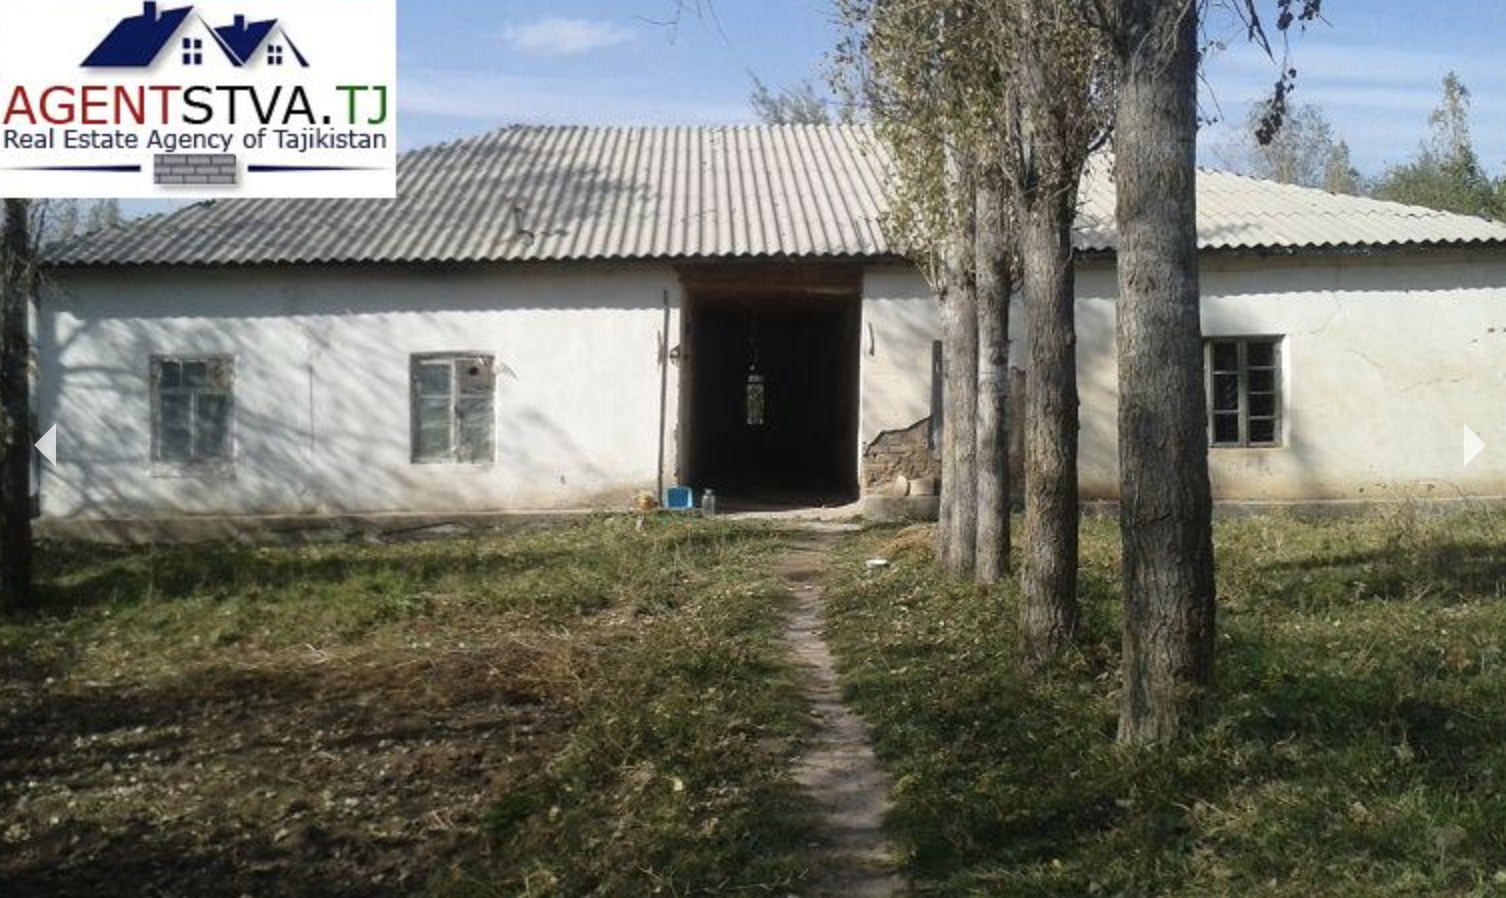 Сколько стоит купить дом в таджикском горном кишлаке6